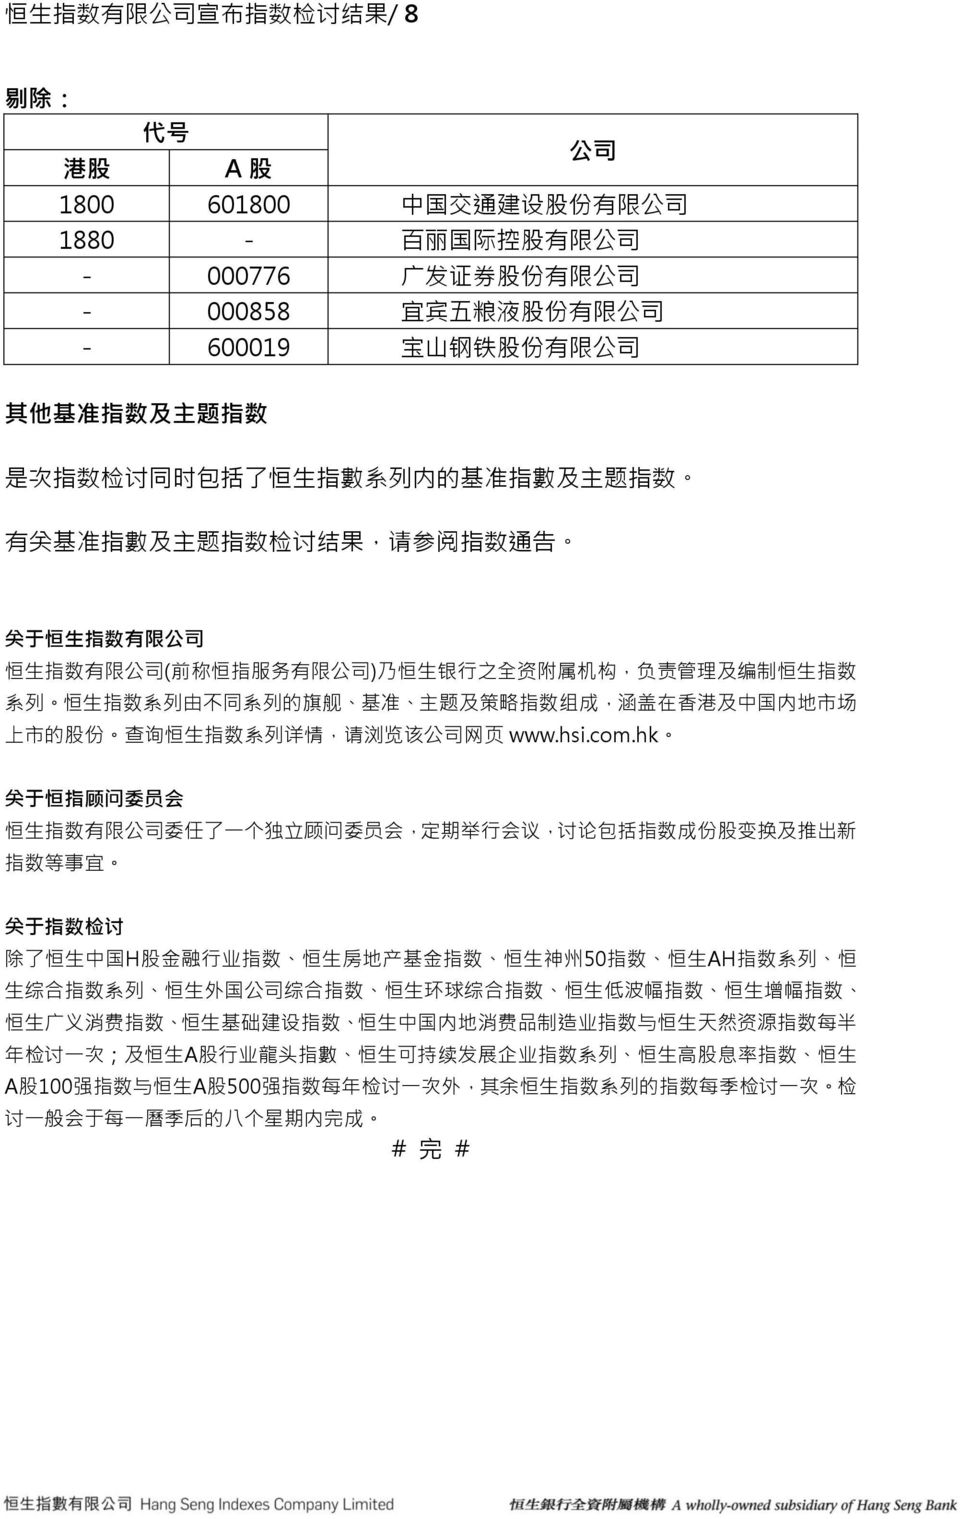 数 系 列 由 不 同 系 列 的 旗 舰 基 准 主 题 及 策 略 指 数 组 成, 涵 盖 在 香 港 及 中 国 内 地 市 场 上 市 的 股 份 查 询 恒 生 指 数 系 列 详 情, 请 浏 览 该 网 页 www.hsi.com.